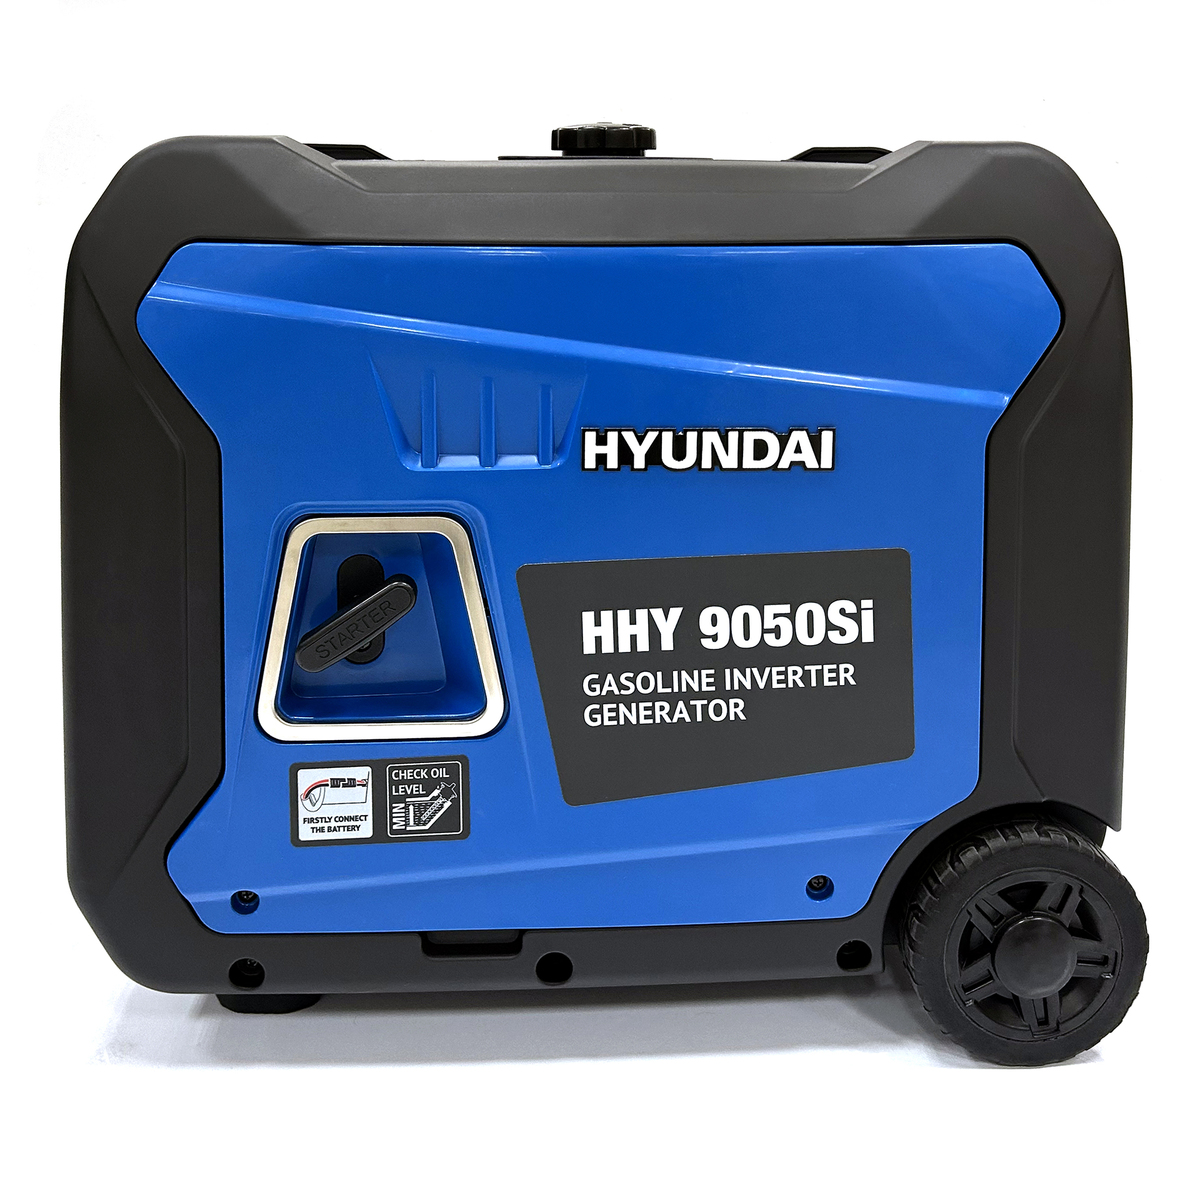 Электрогенератор Hyundai HHY 9050Si, однофазный, инверторный, бензиновый, 9.5 л.с., 6.3 кВт, 1xEURO 16A + 1x220В 32A (HHY 9050Si)